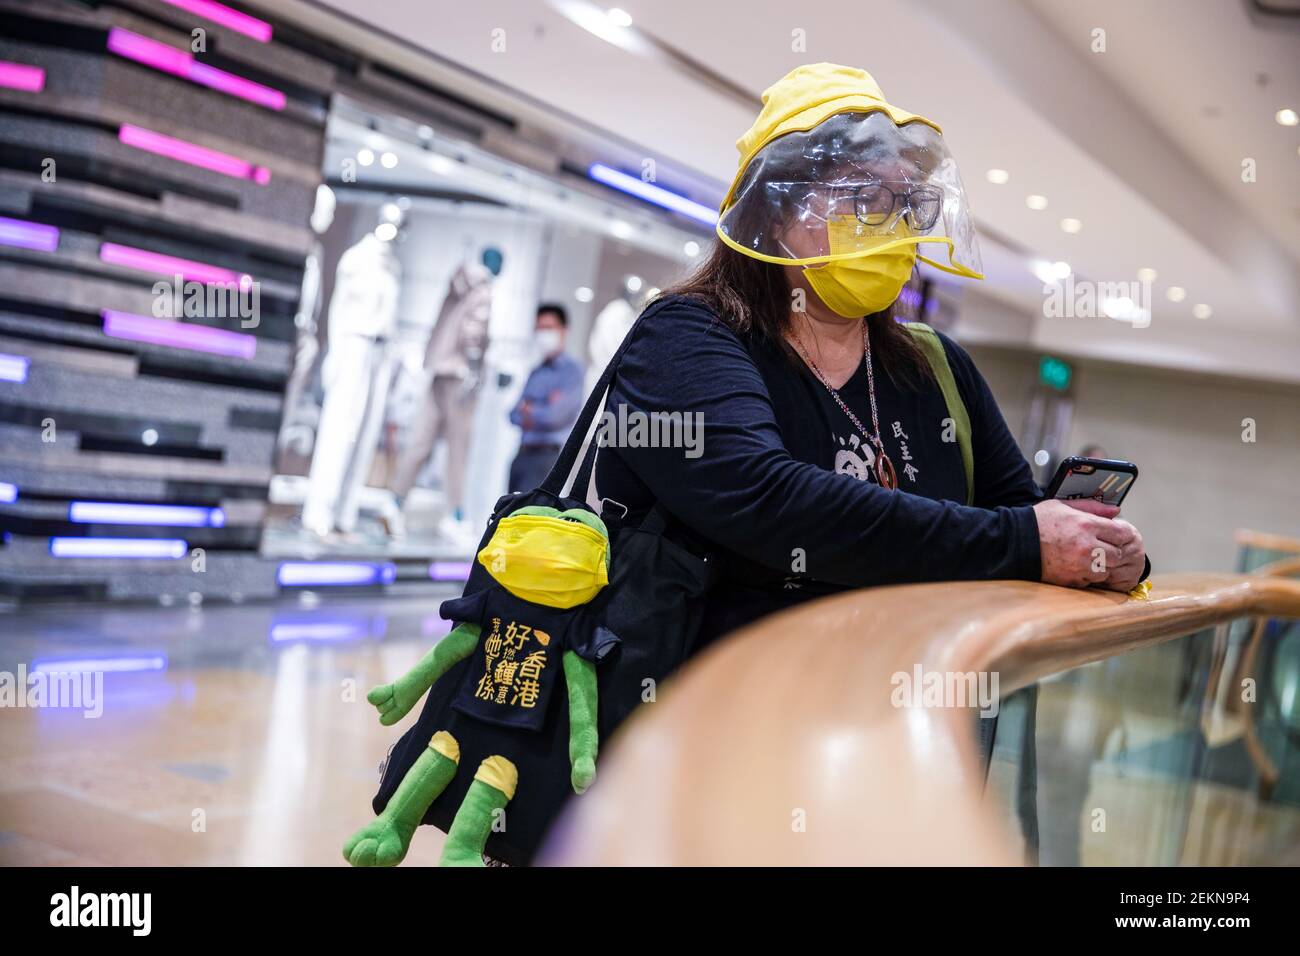 Ein Protestler trägt eine gelbe Maske und einen gelben Hut, während er eine  Protestikon-Tasche "pepe", den Frosch, während des Protestes zum 6th.  Jahrestag der Regenschirm-Bewegung trägt. Dutzende von prodemokratischen  Demonstranten versammelten sich